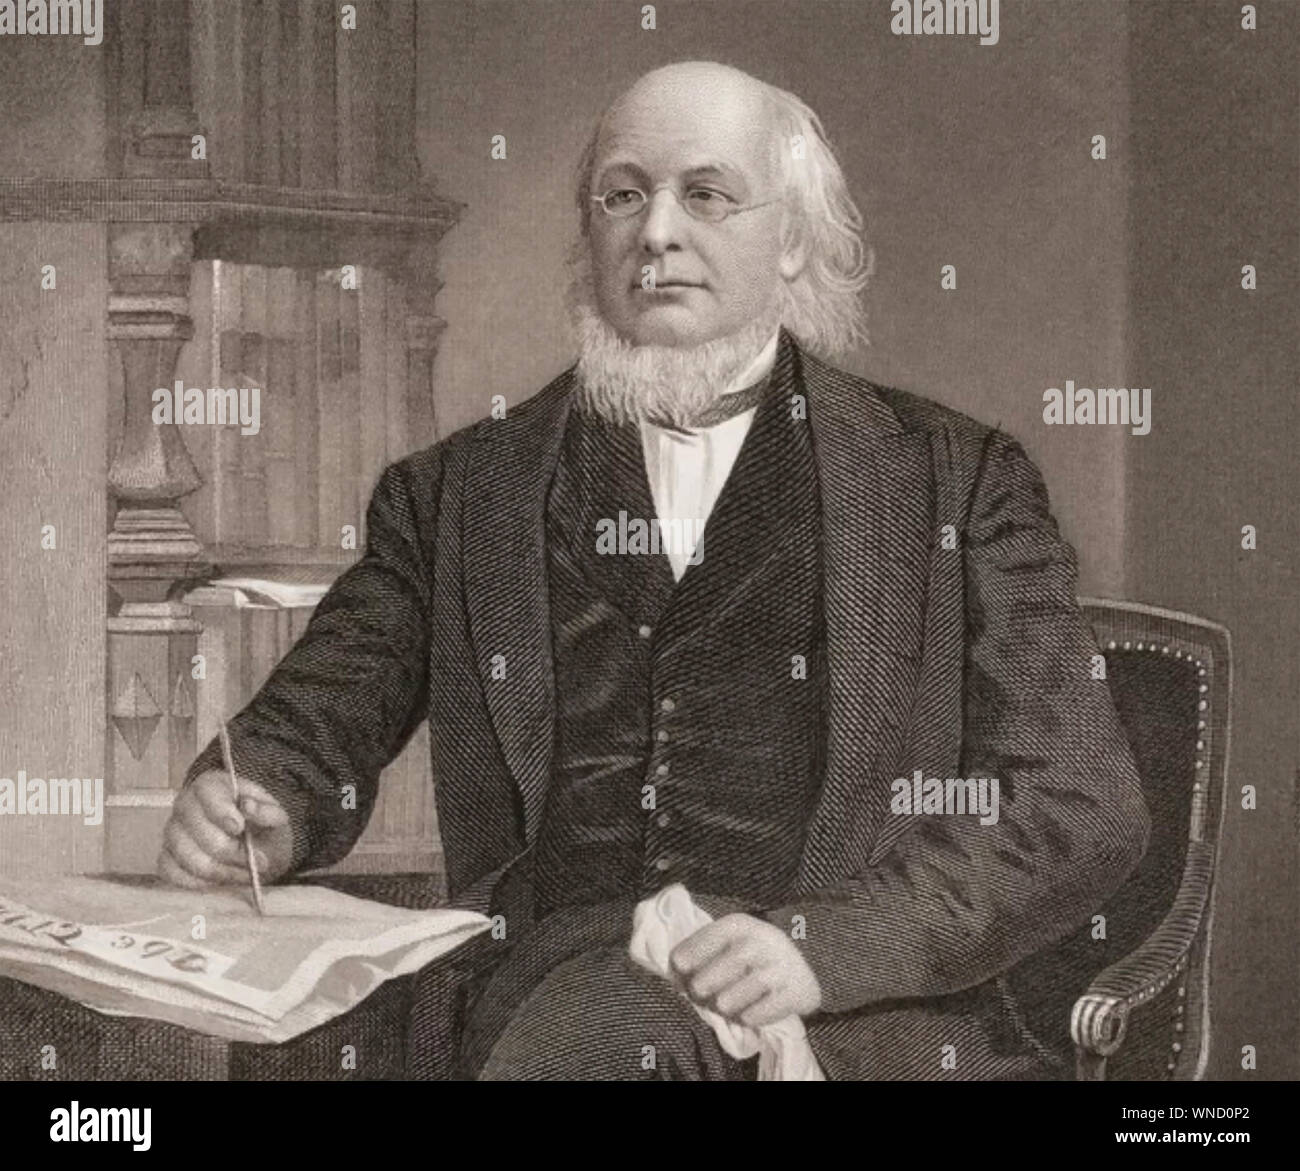 HORACE GREELEY (1811-1872) amerikanischer Staatsmann und Gründer der New York Tribune Zeitung Stockfoto